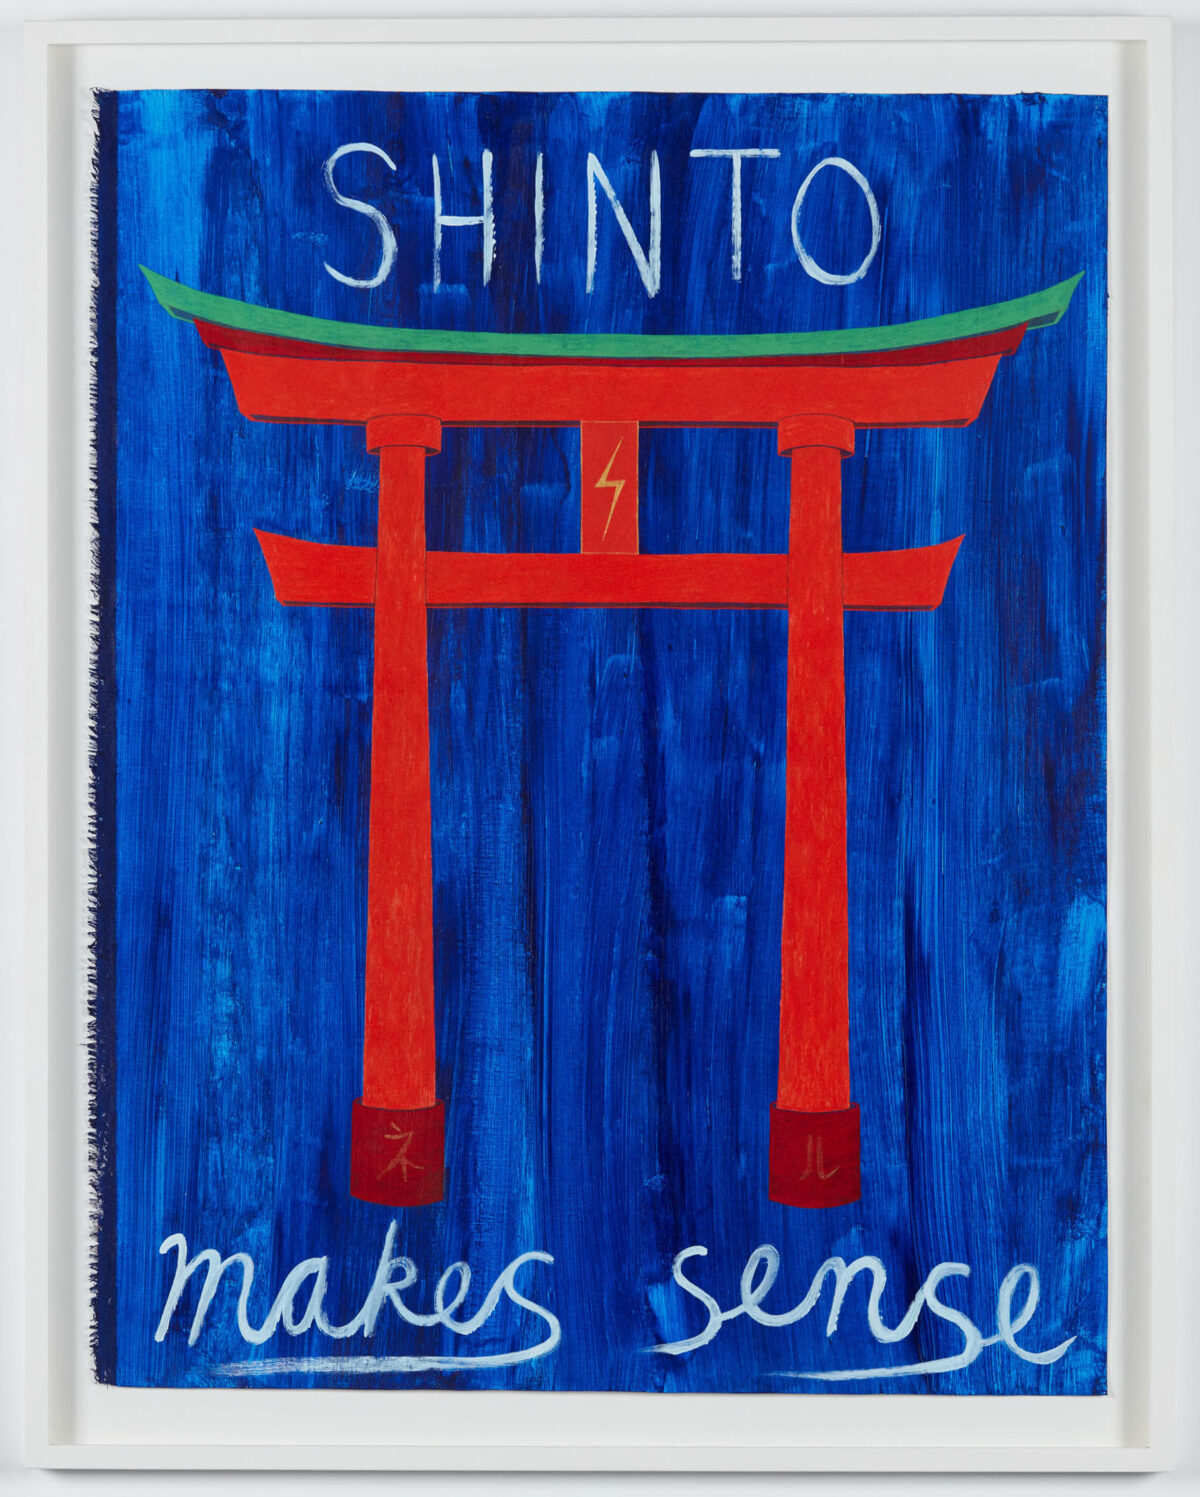 SHINTO makes sense copy